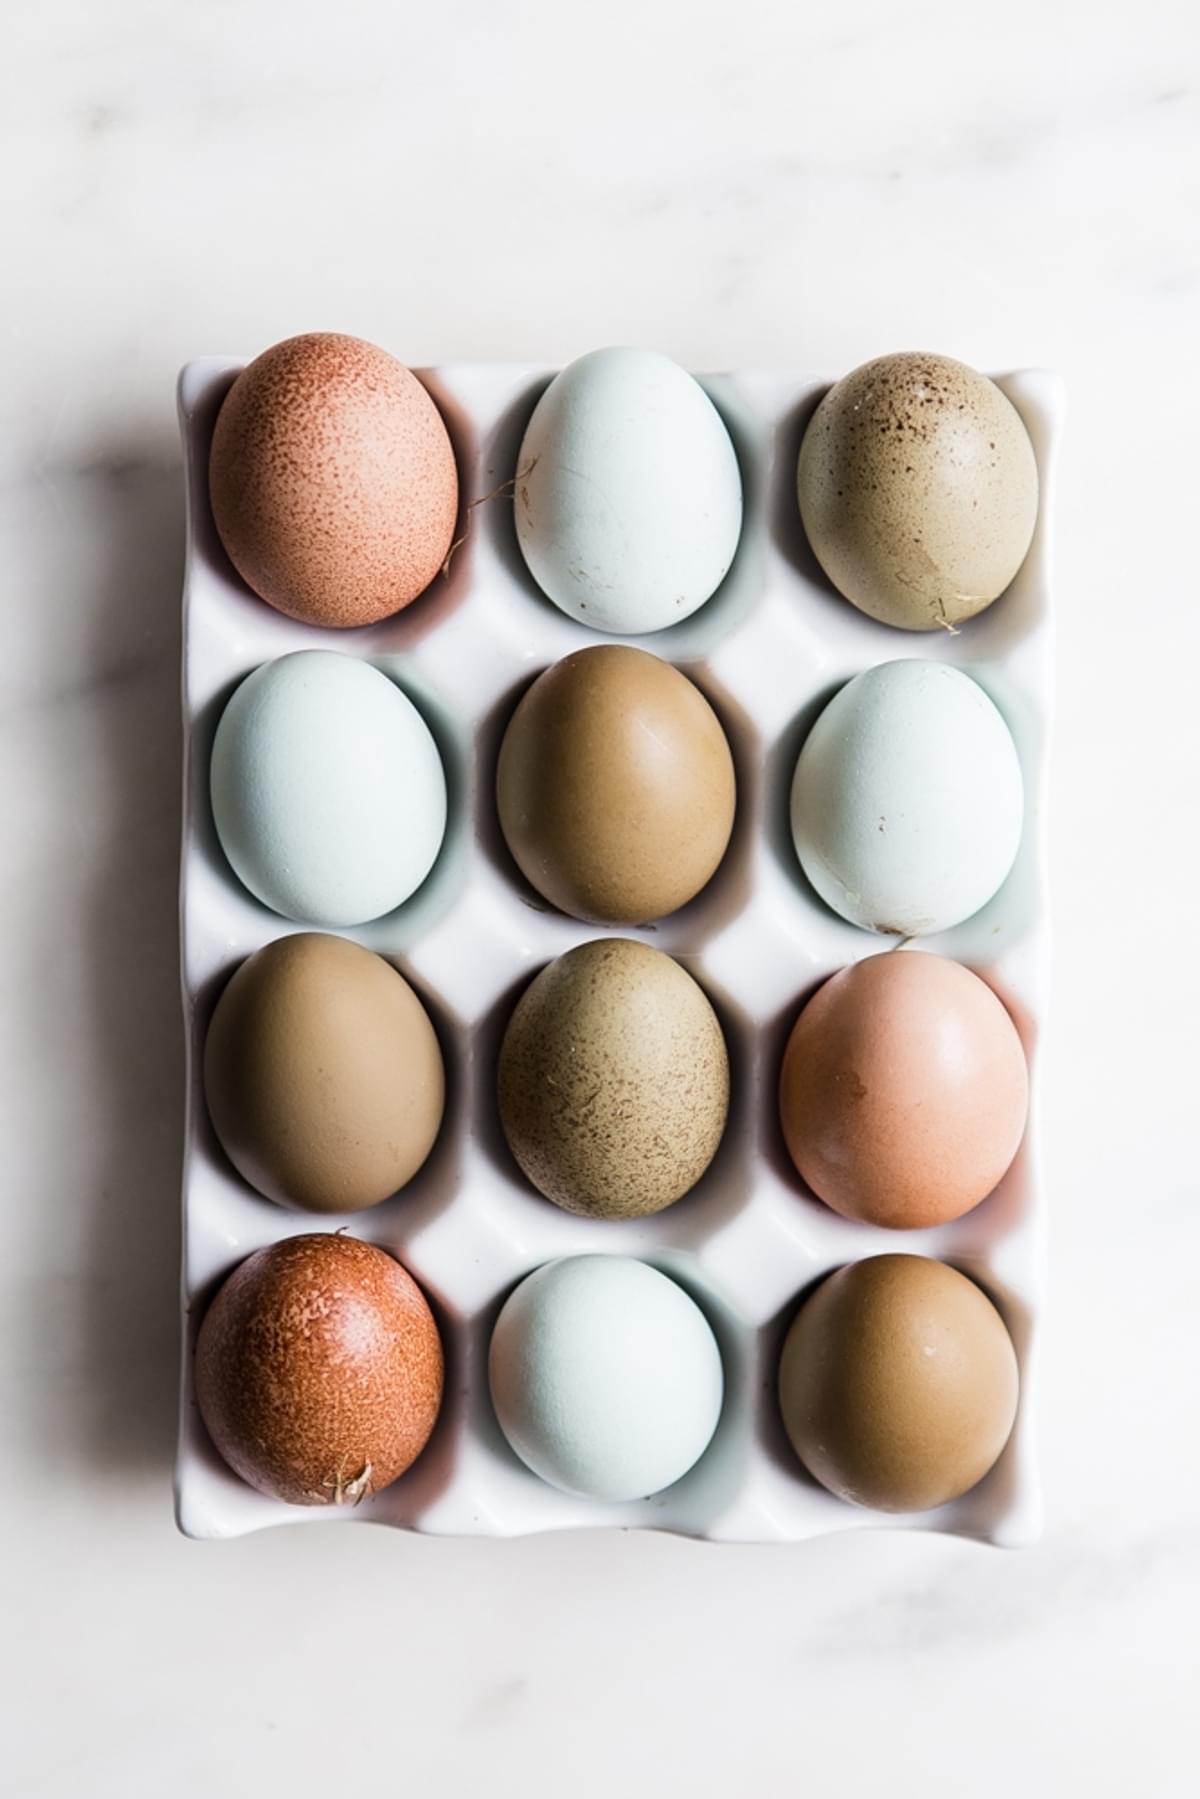 a dozen eggs in a ceramic white carton